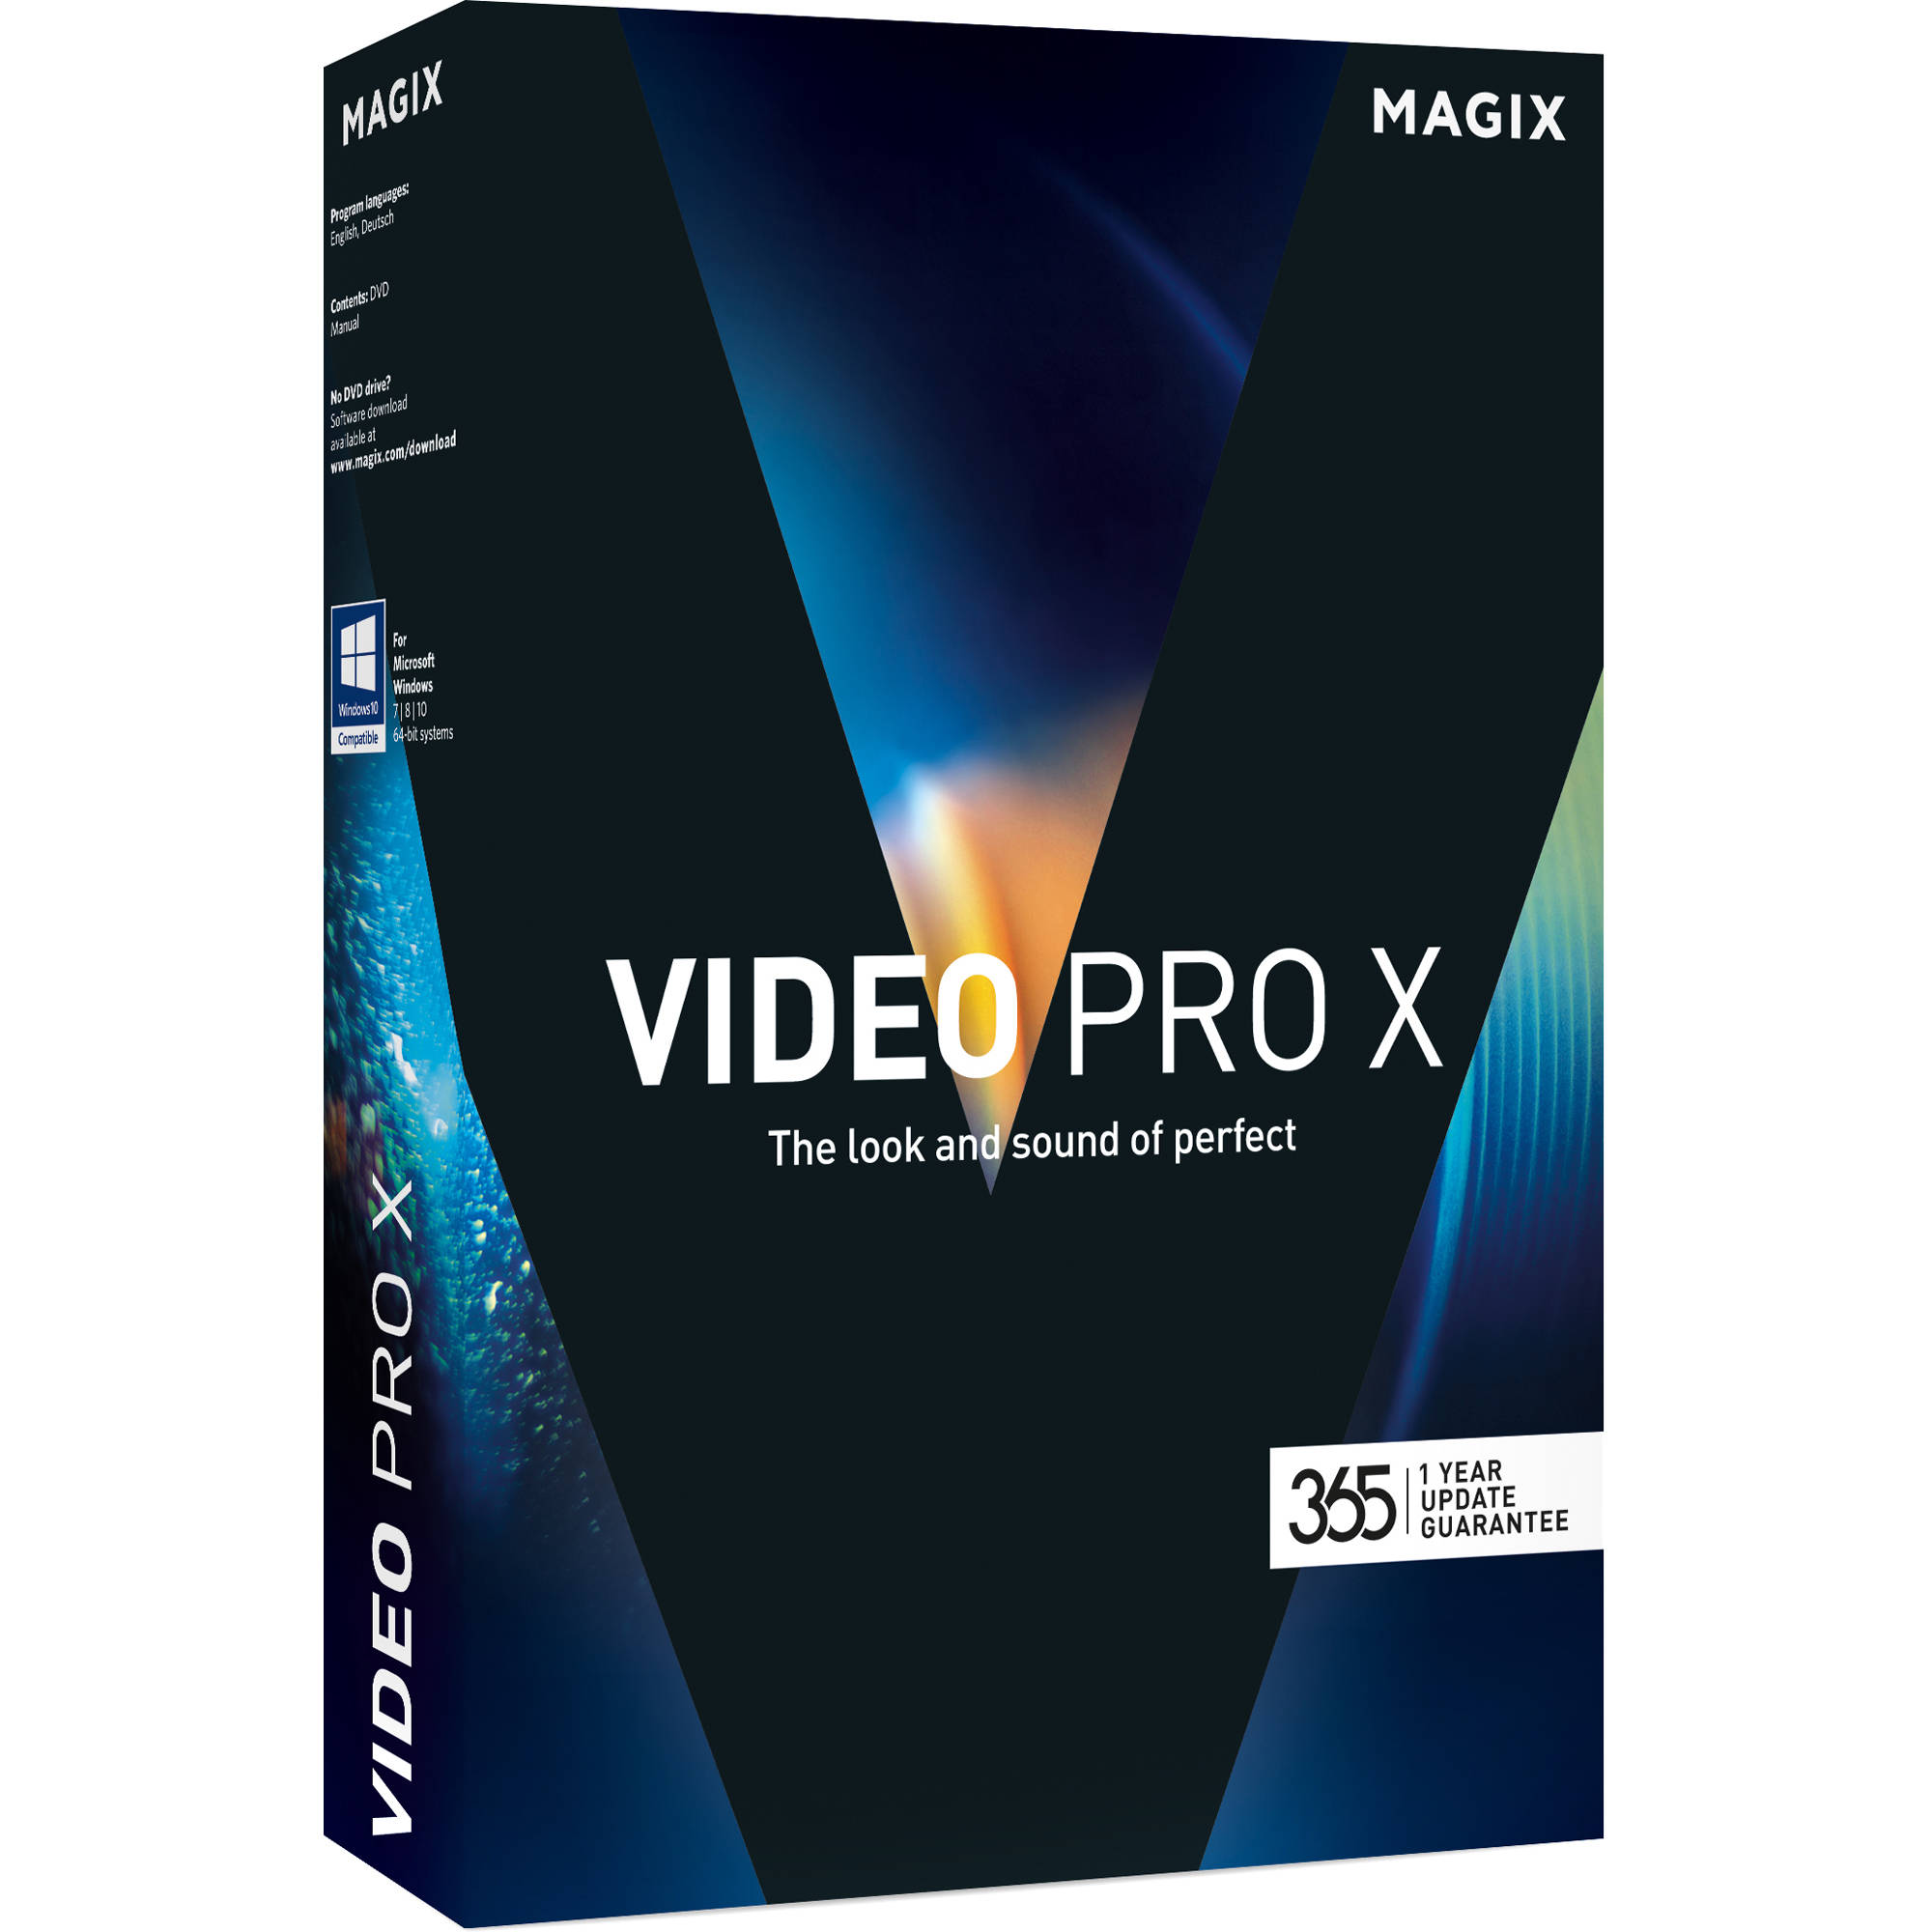 MAGIX Video Pro X14 v20.0.3.169 (x64) Multilingual + Crack